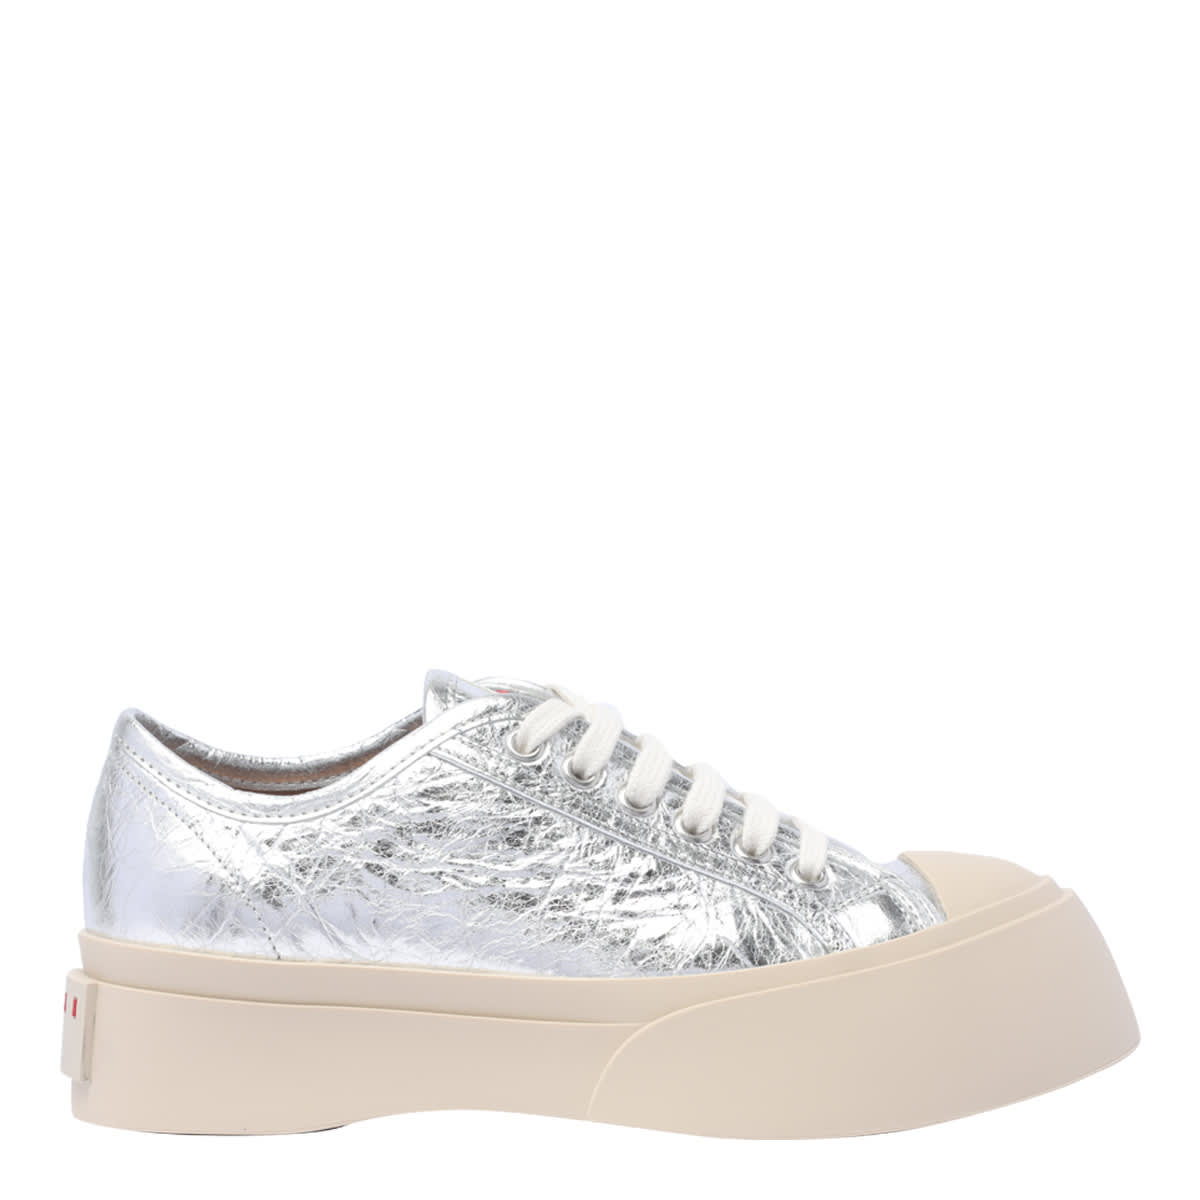 Marni Pablo Sneakers In Silver